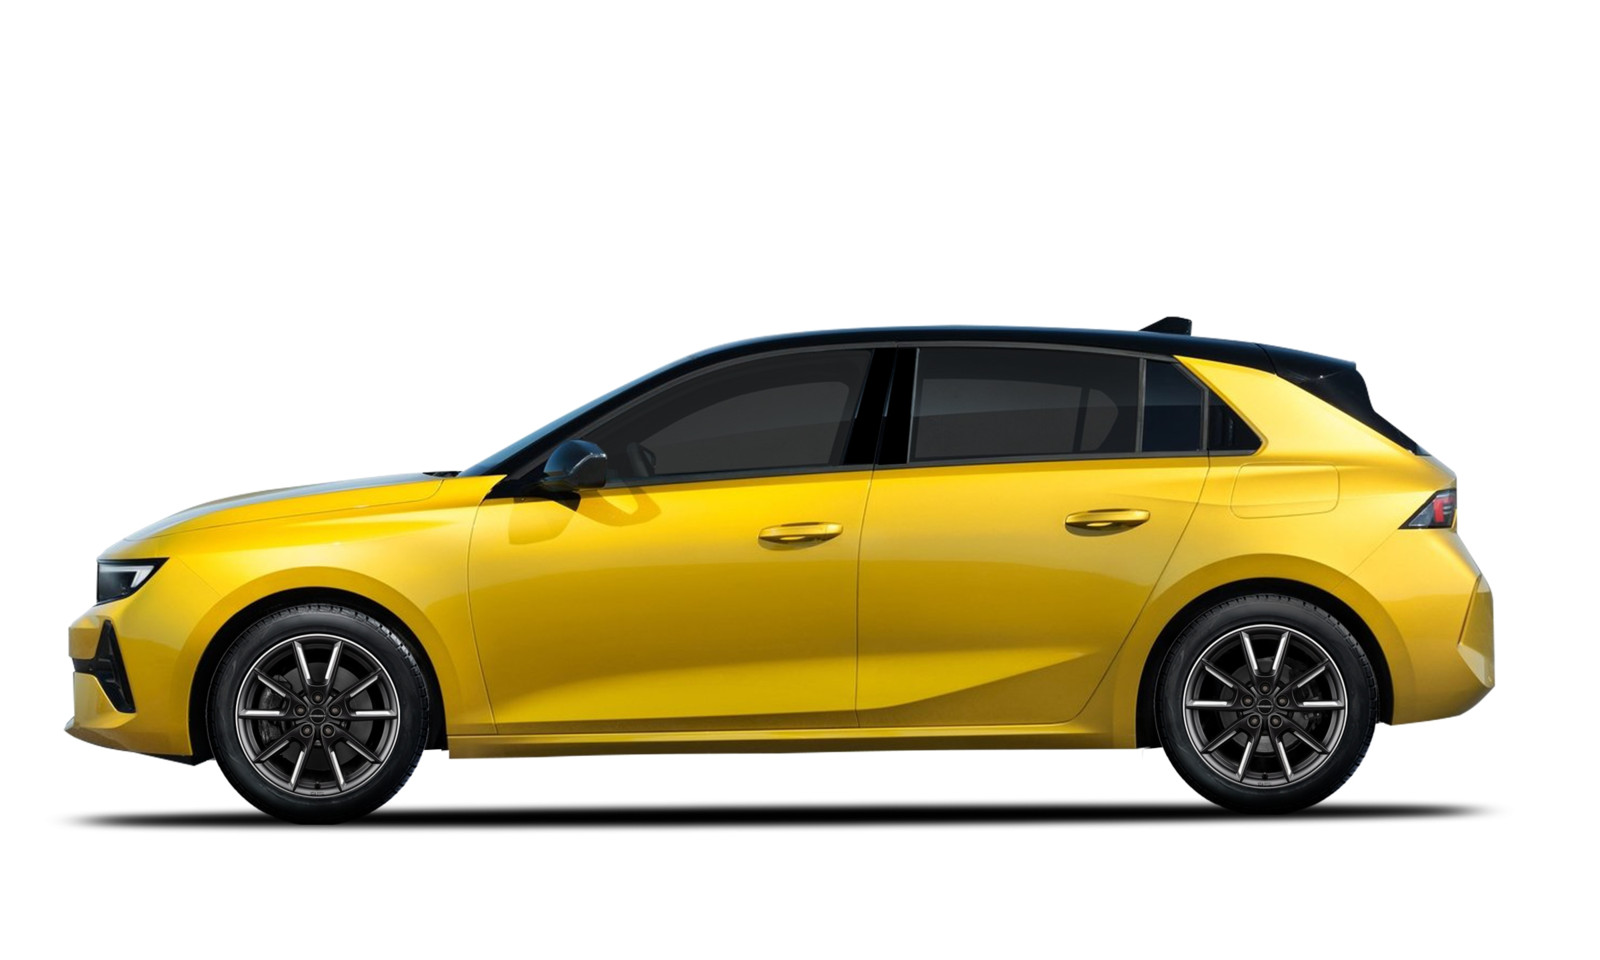 Als Radoption für den neuen Opel Astra L offeriert Borbet sein LX18-Design.